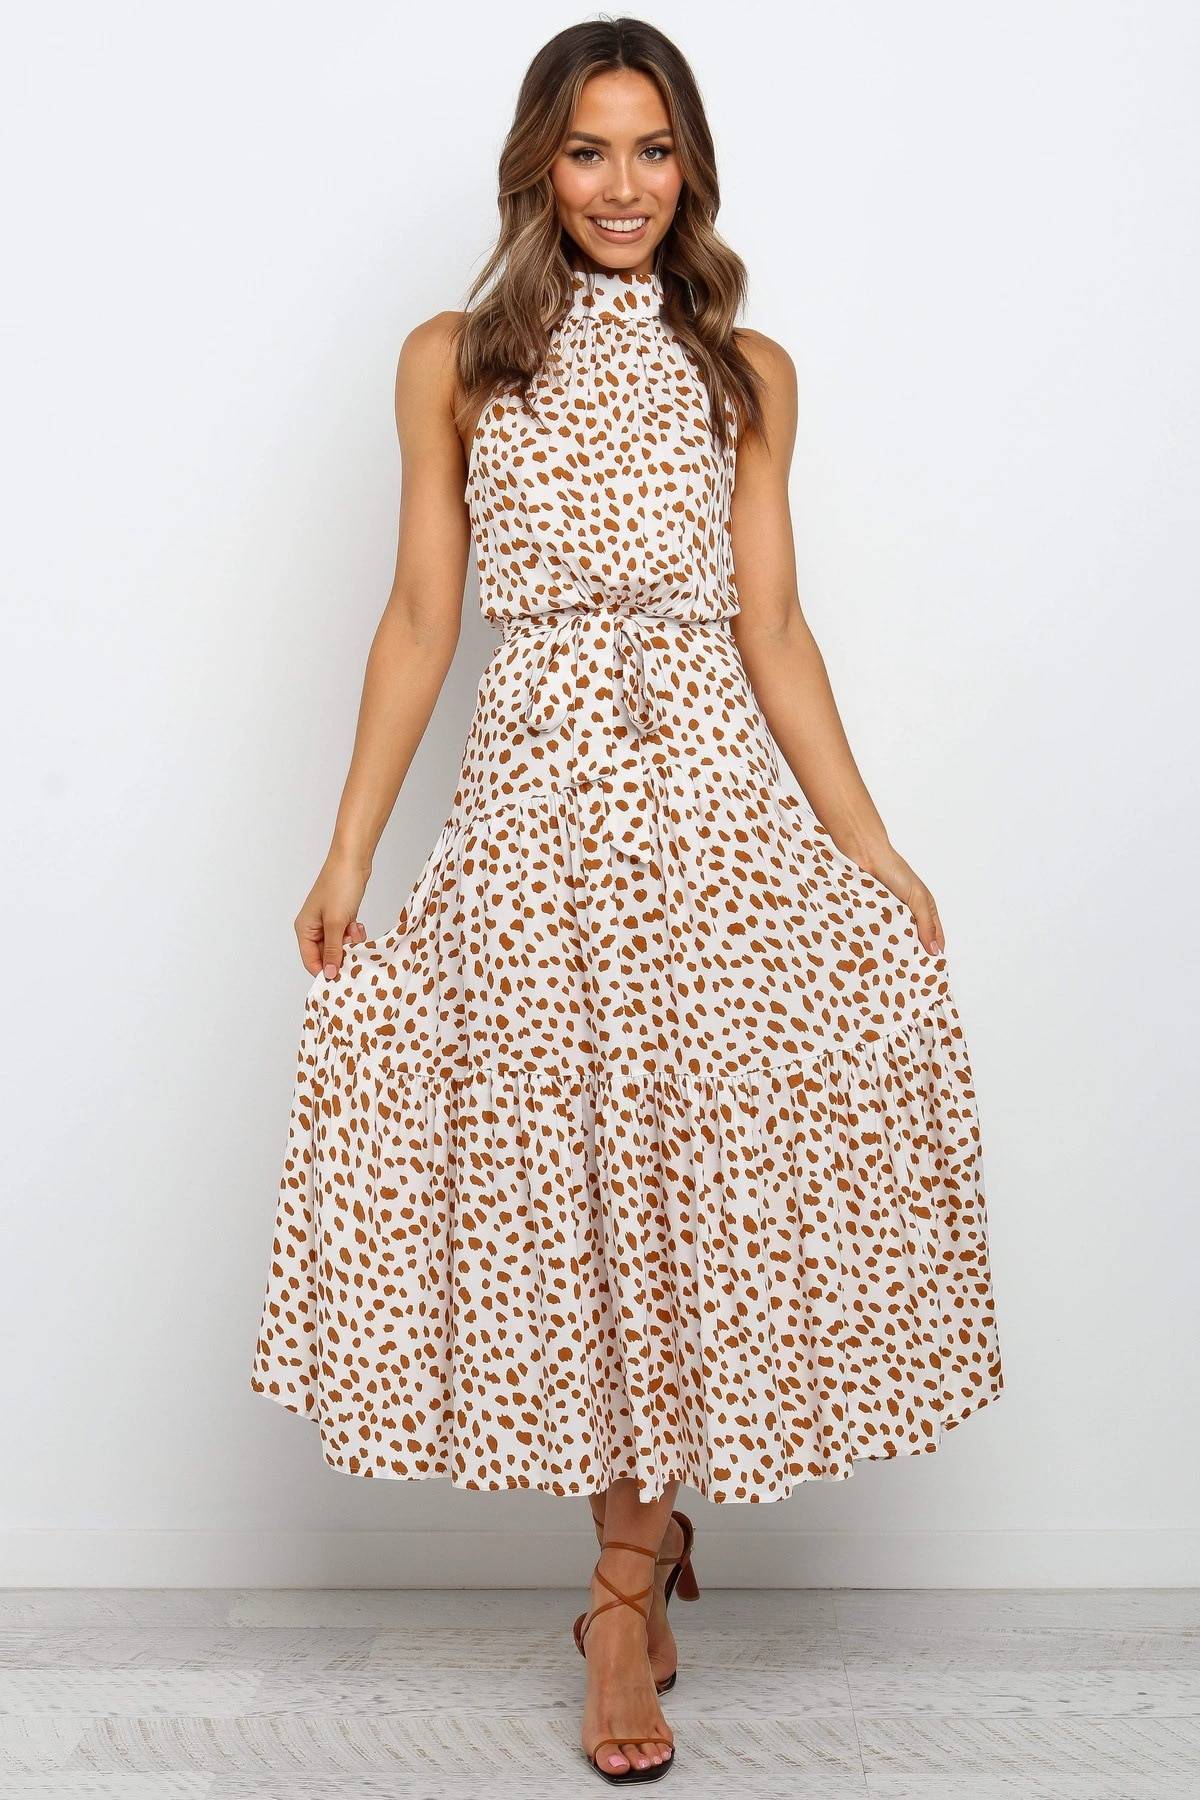 Polka Dot Halter Dress - All Dresses - Clothing - 43 - 2024